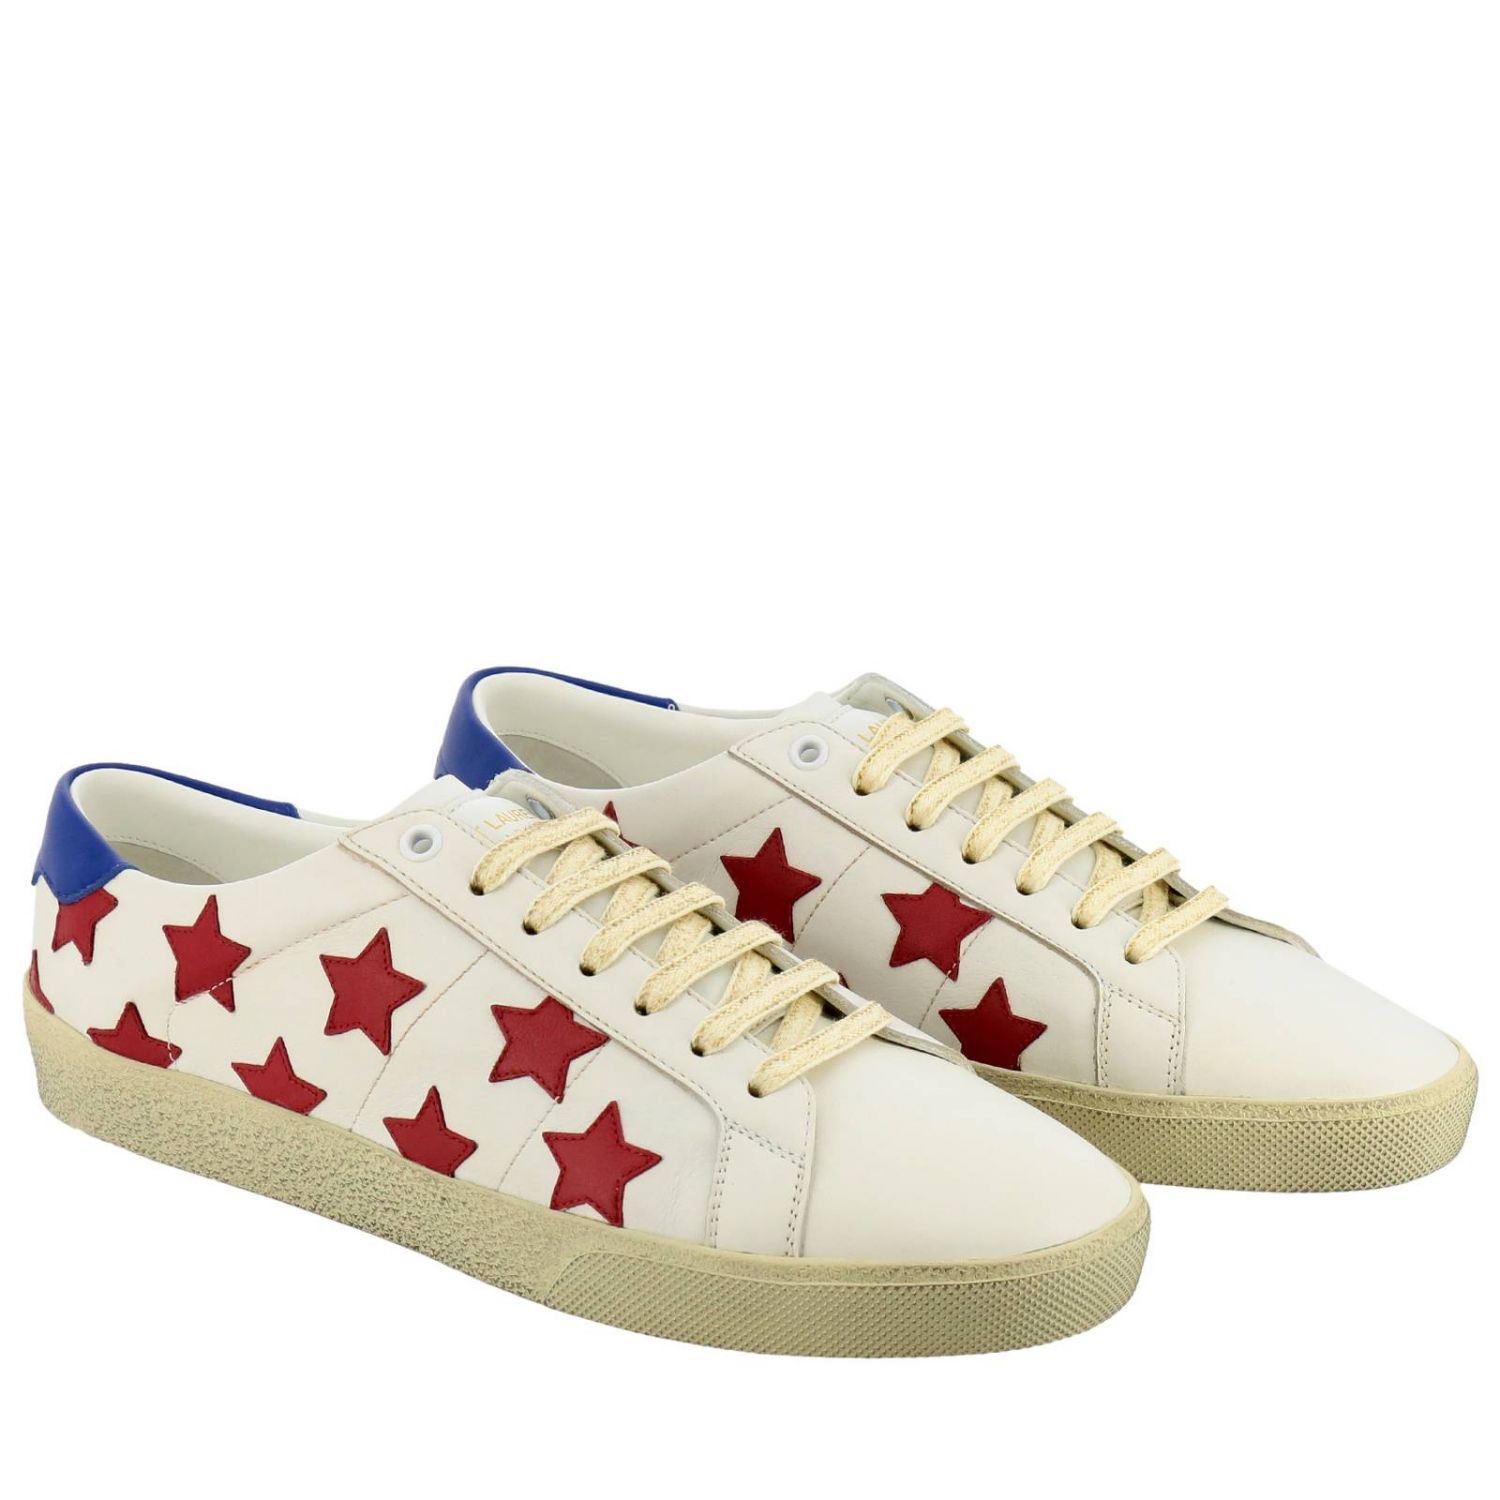 Saint Laurent Outlet: Shoes men - White | Sneakers Saint Laurent 549539 ...